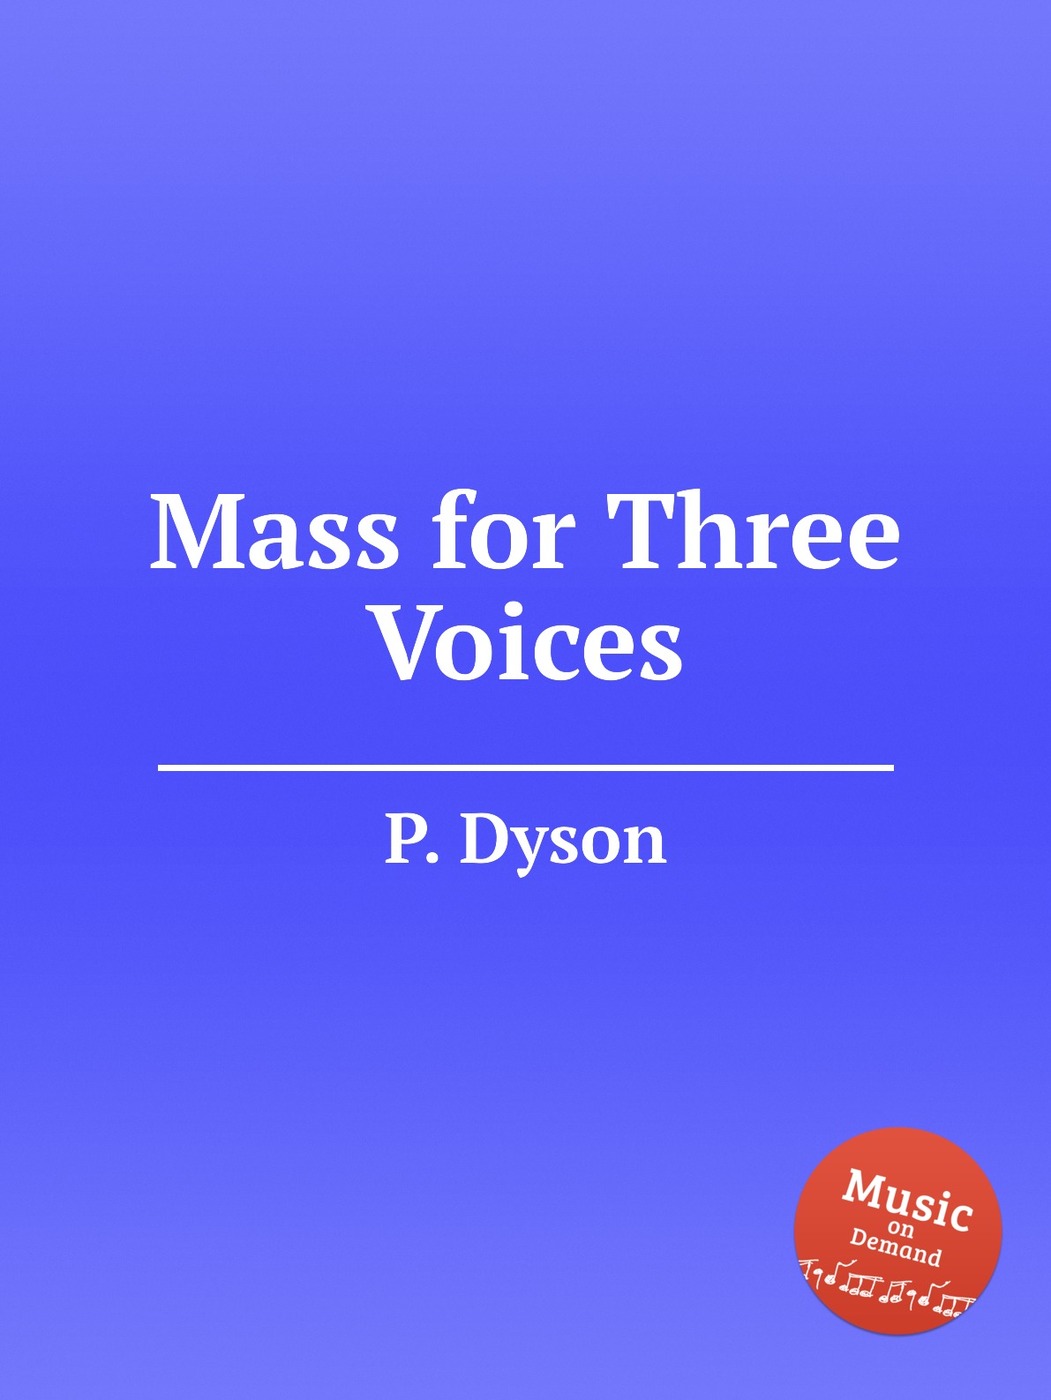 Voice book. W3 voices